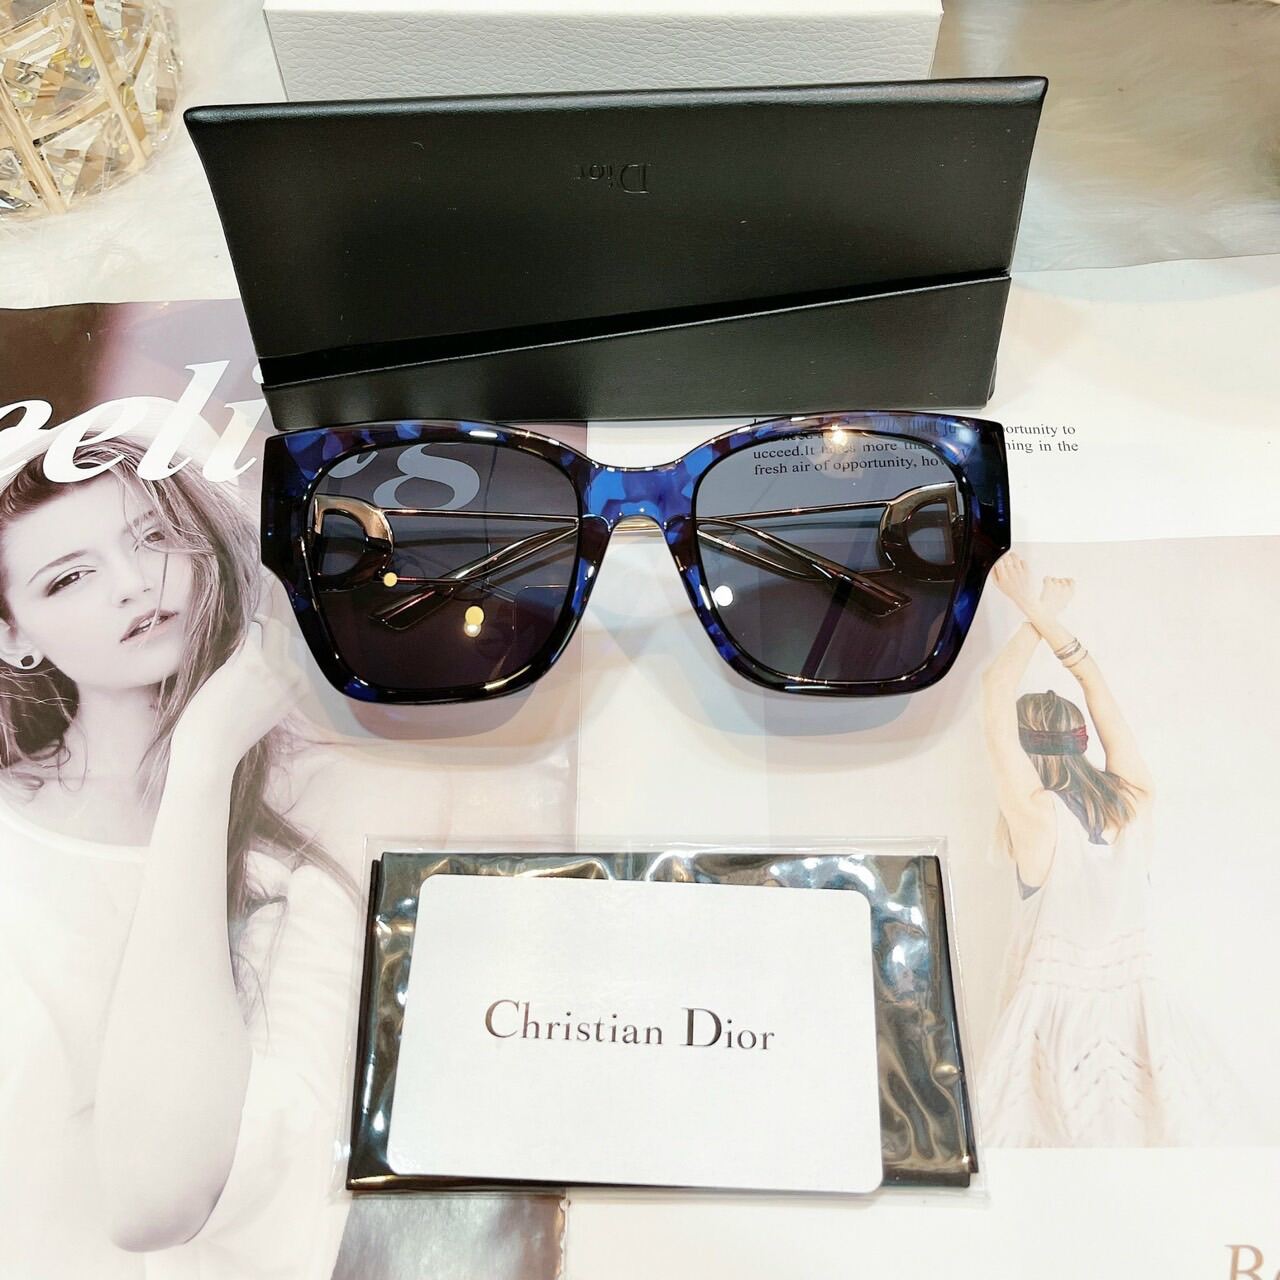 Mắt kính Dior nữ chính hãng Christian Dior 2878 made in Italy